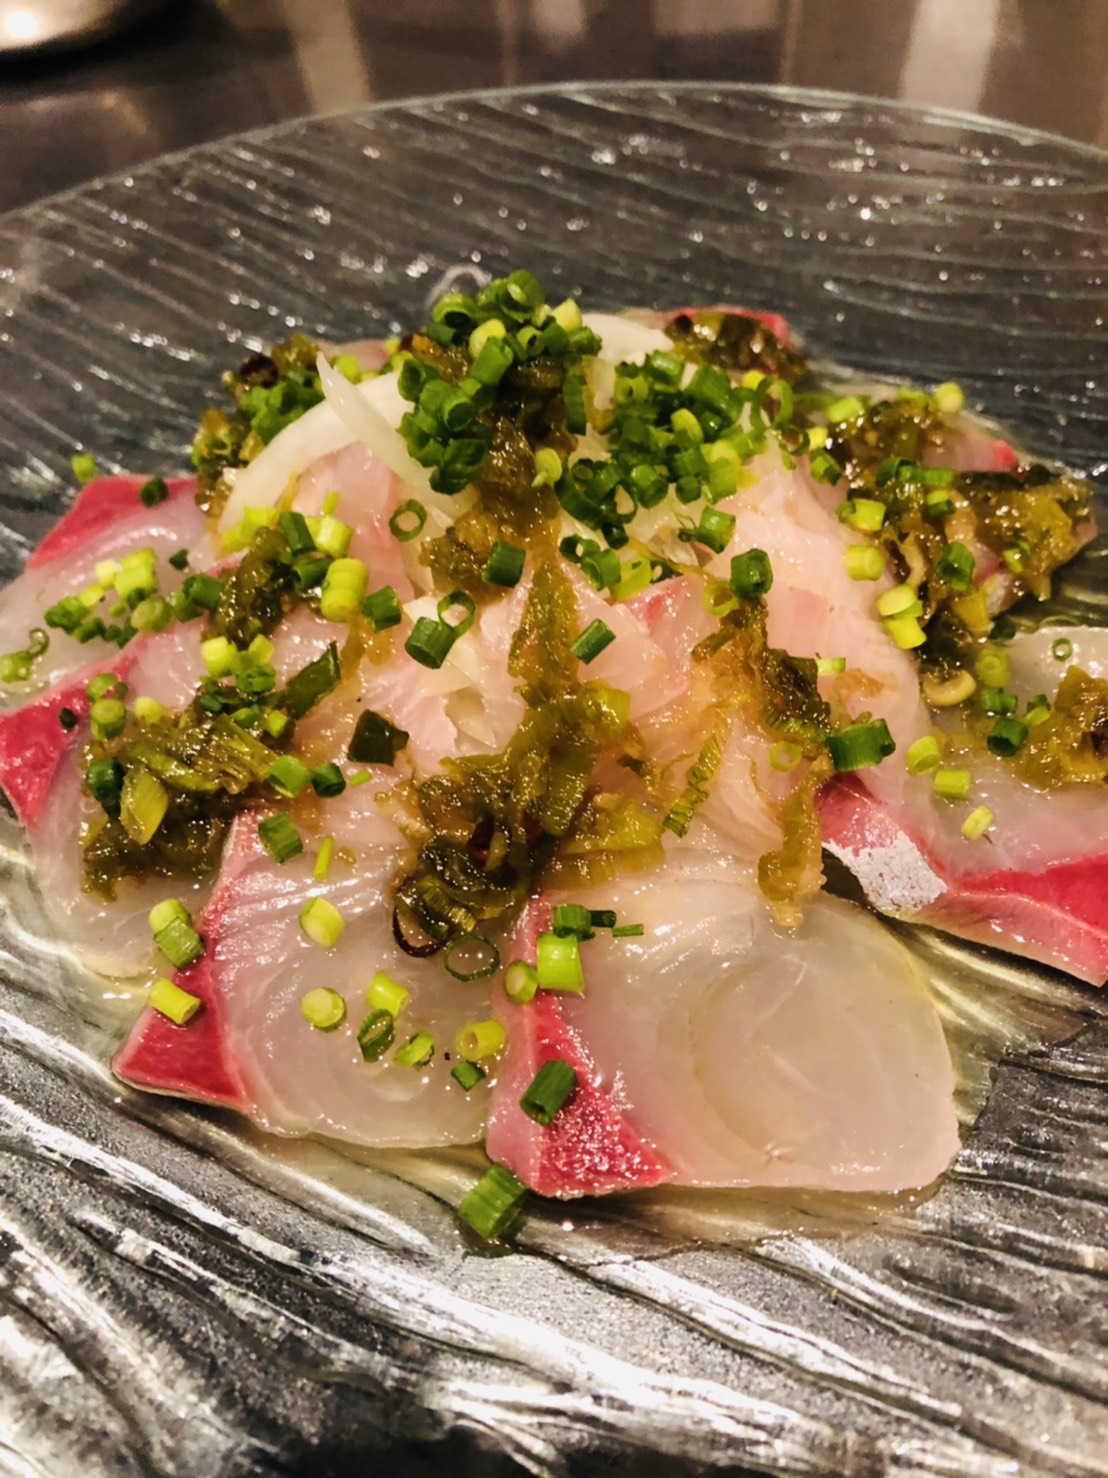 カンパチの和風カルパッチョ 海の恵み 食の底力 Japan 公式レシピサイト